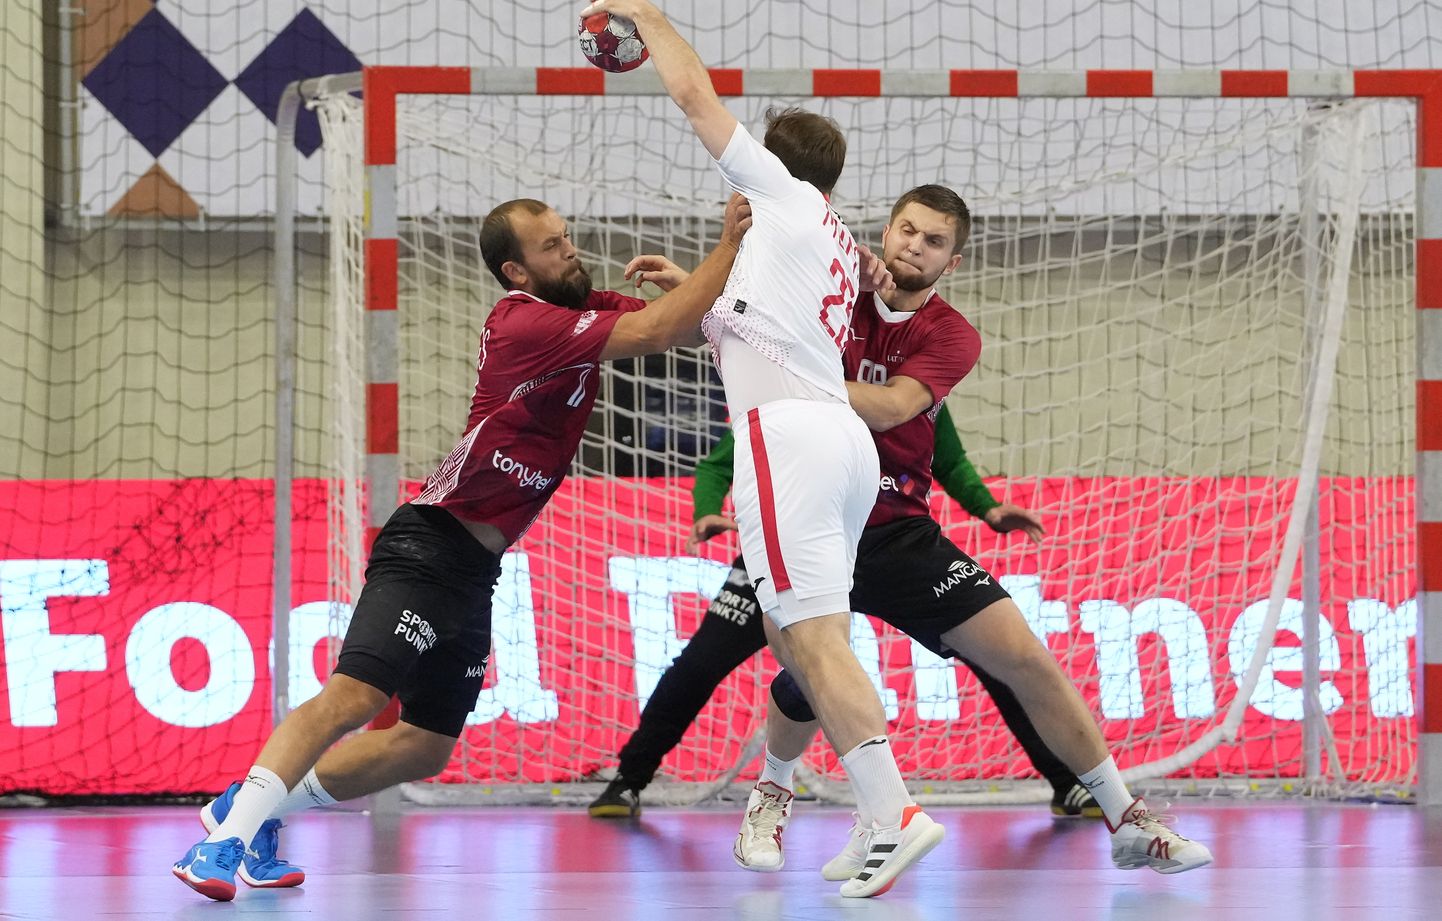 Eiropas čempionāta kvalifikācijas turnīra spēle handbolā vīriešiem starp Latvijas un Polijas komandām Vidzemes Olimpiskajā centrā Valmierā.